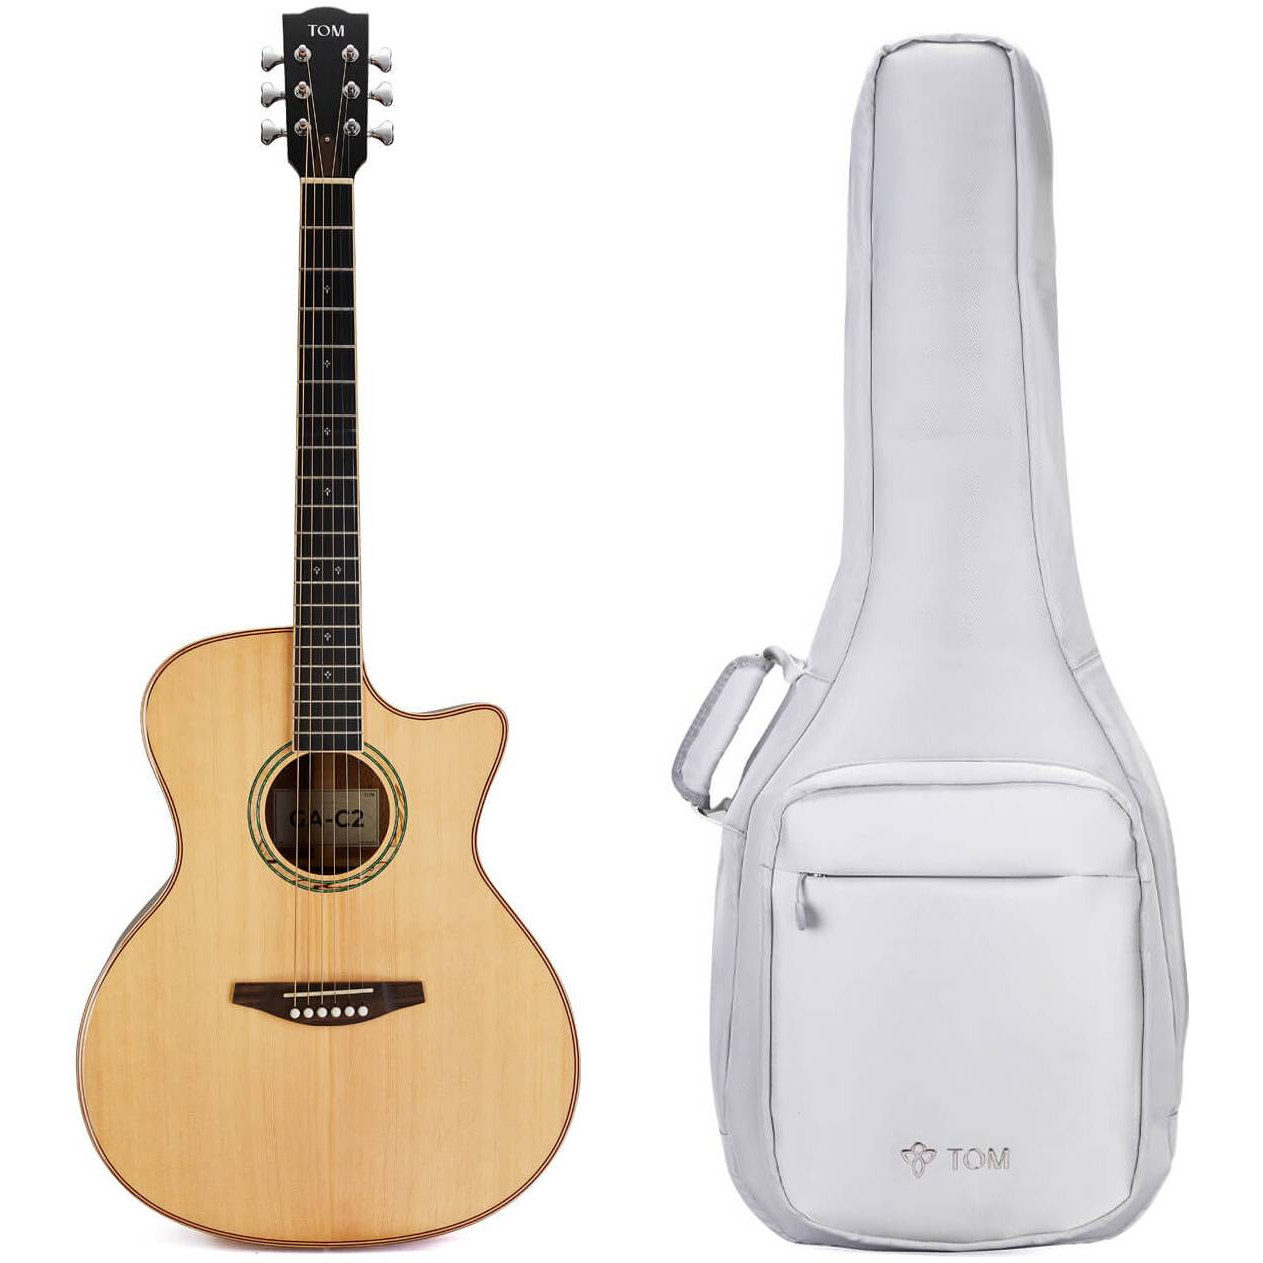 Акустические гитары TOM GA-C2 (чехол в комплекте) бас гитары cort njs5 bk чехол в комплекте